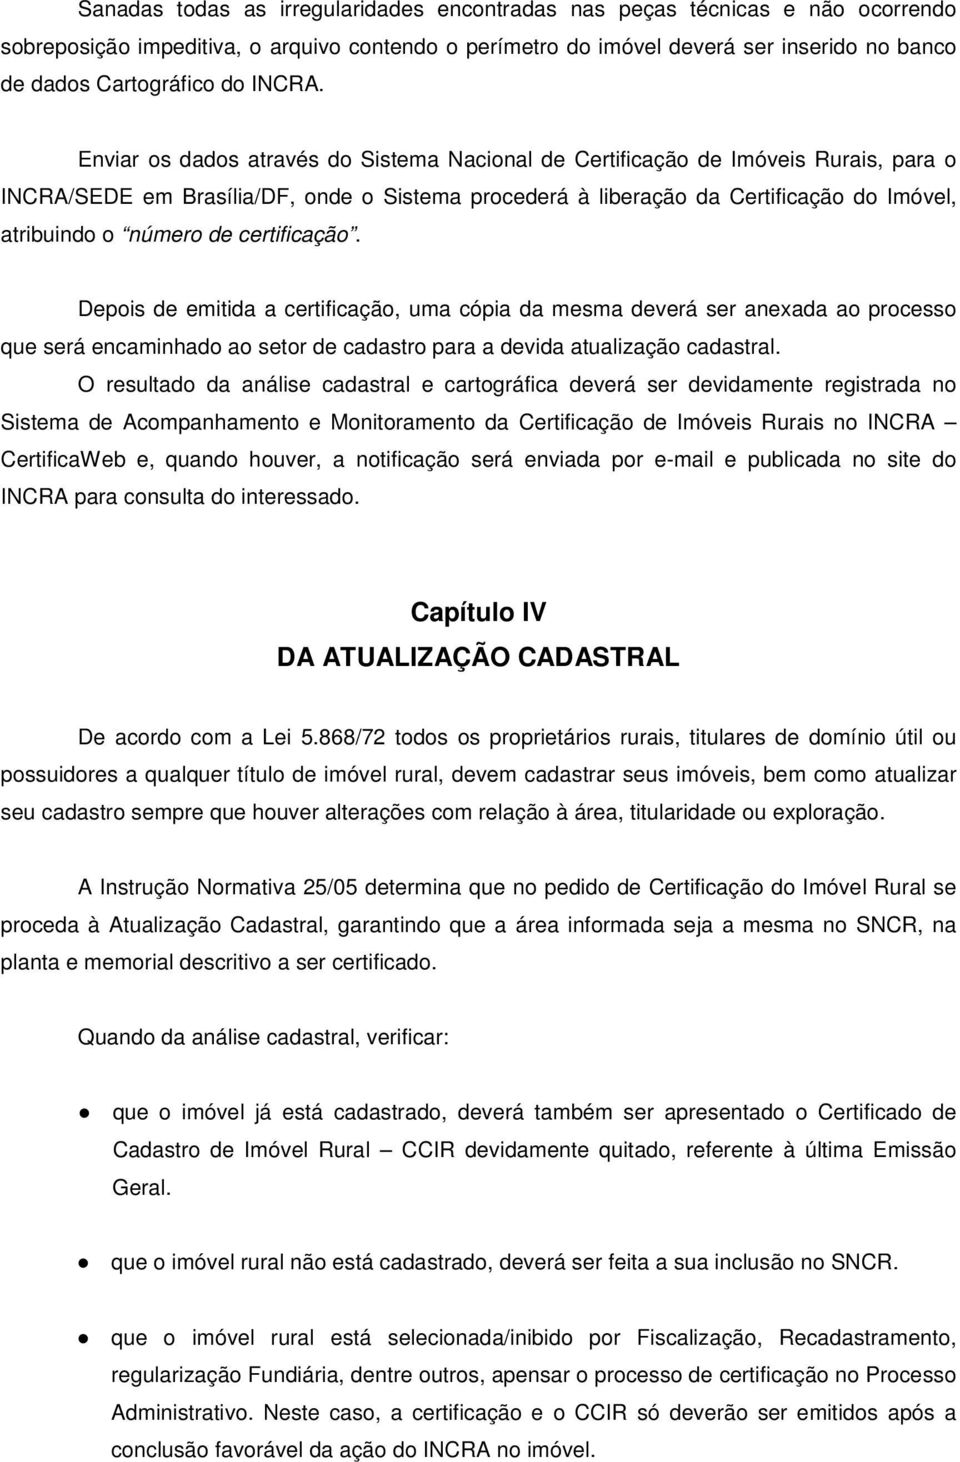 Enviar os dados através do Sistema Nacional de Certificação de Imóveis Rurais, para o INCRA/SEDE em Brasília/DF, onde o Sistema procederá à liberação da Certificação do Imóvel, atribuindo o número de